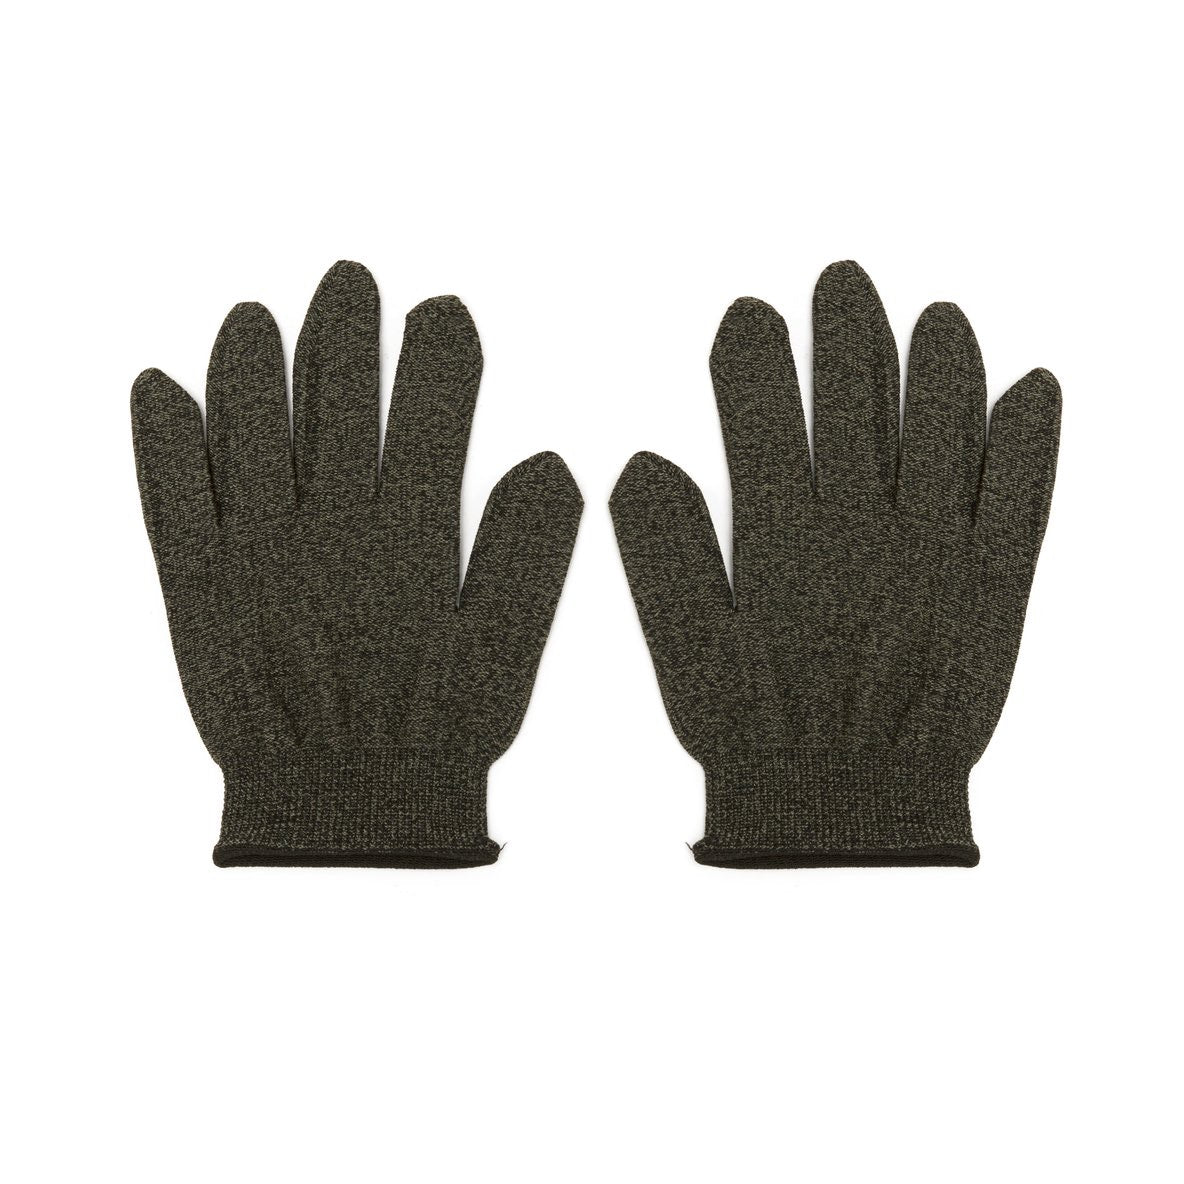 Kikkerland Anti Bacterial Gloves